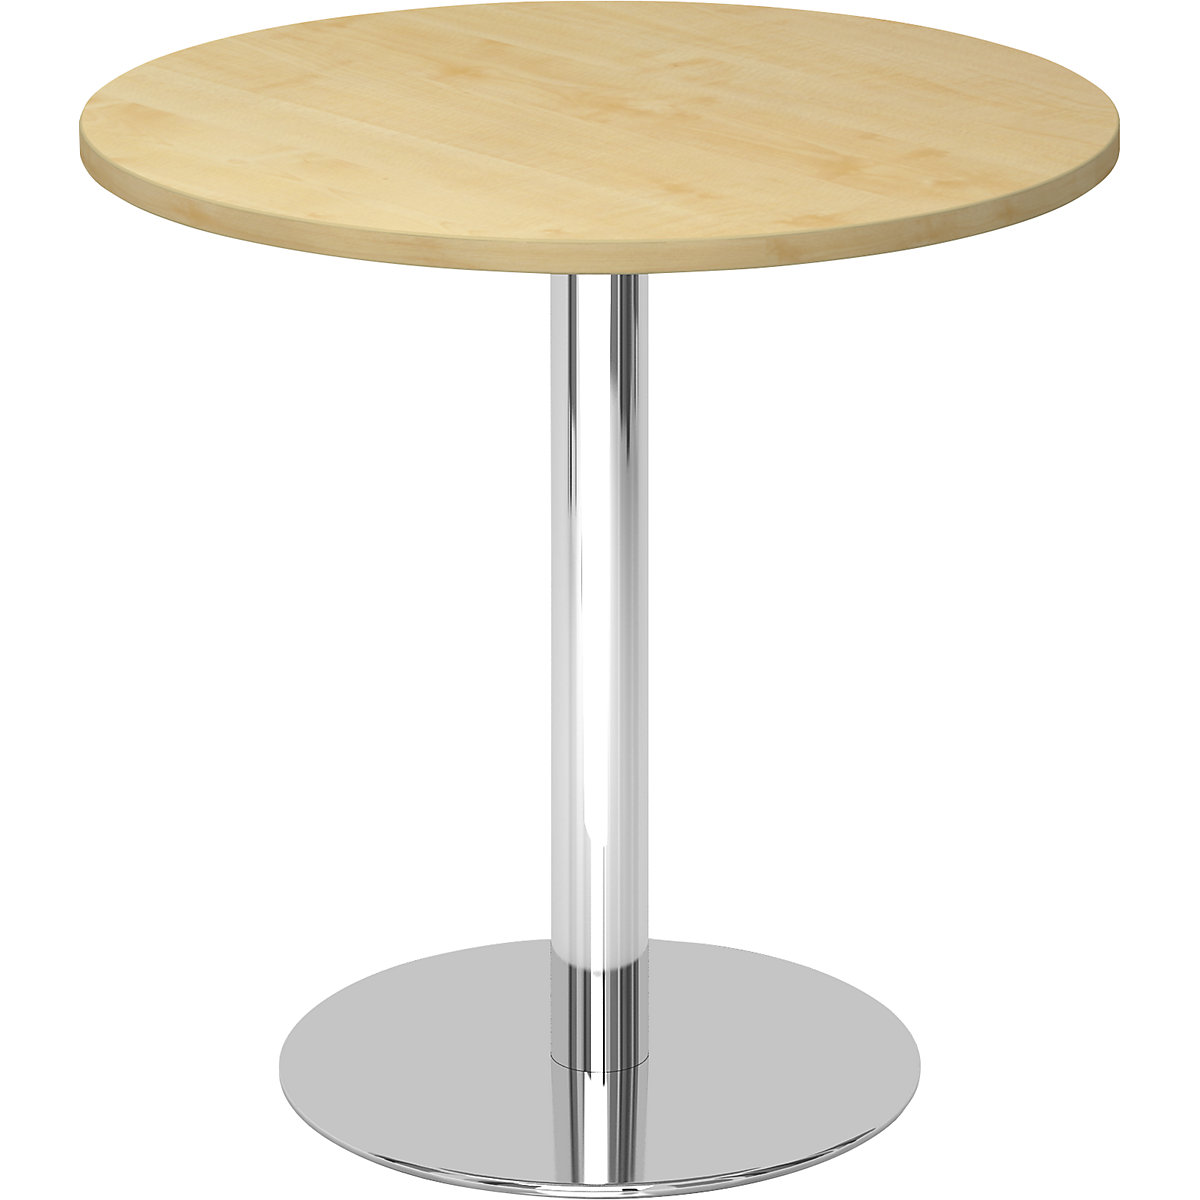 Tárgyalóasztal, Ø 800 mm, 755 mm magas, krómozott váz, juhar-dekor asztallap